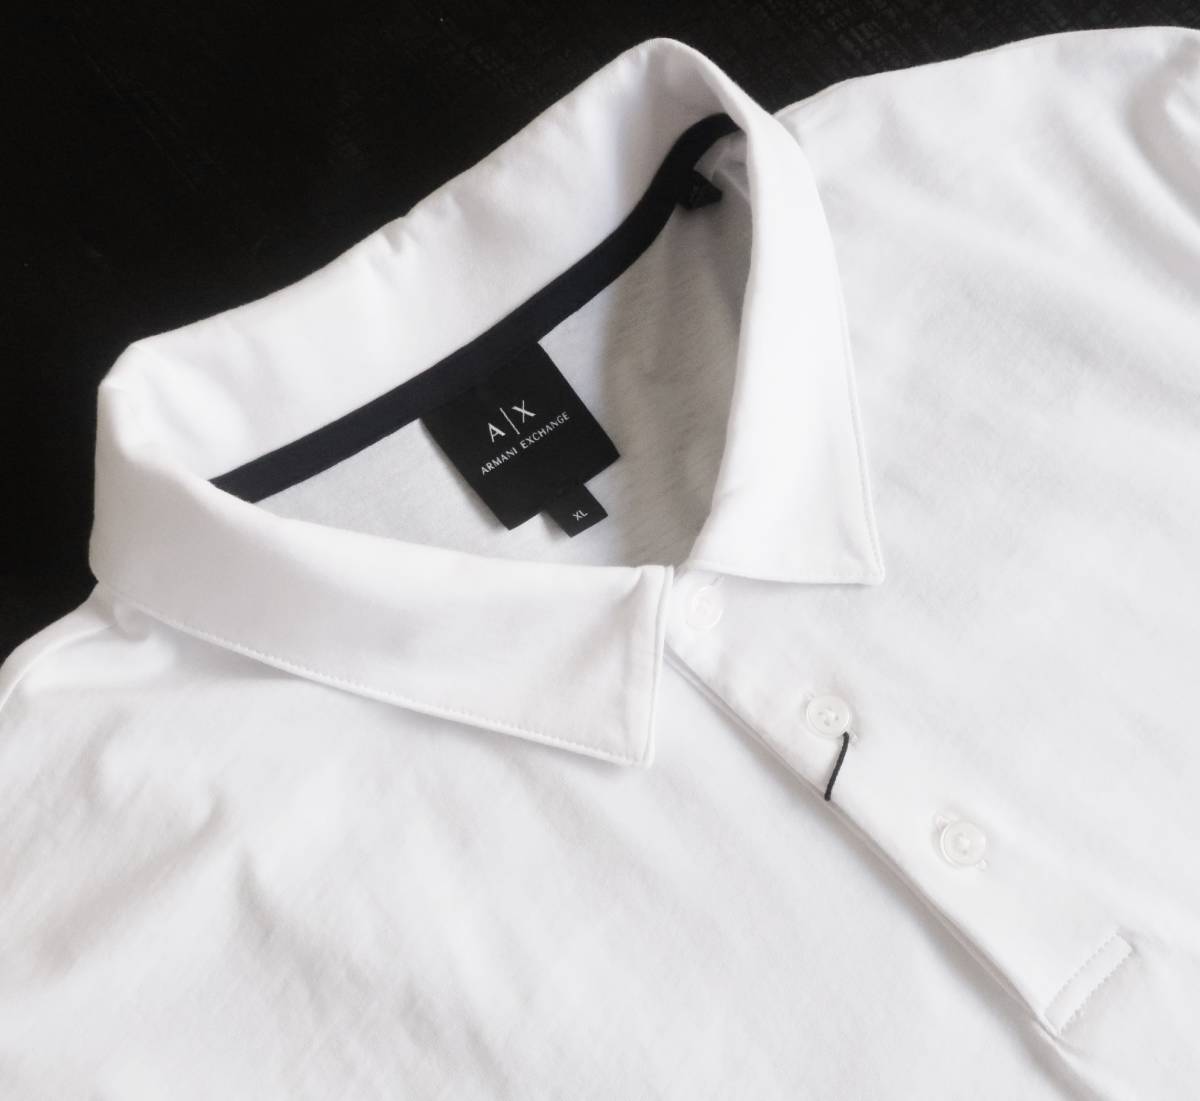  новый товар * Armani * освежение . белый рубашка-поло * боковой рейсинг Logo лента * короткий рукав вязаный рубашка белый XL*AX ARMANI*77